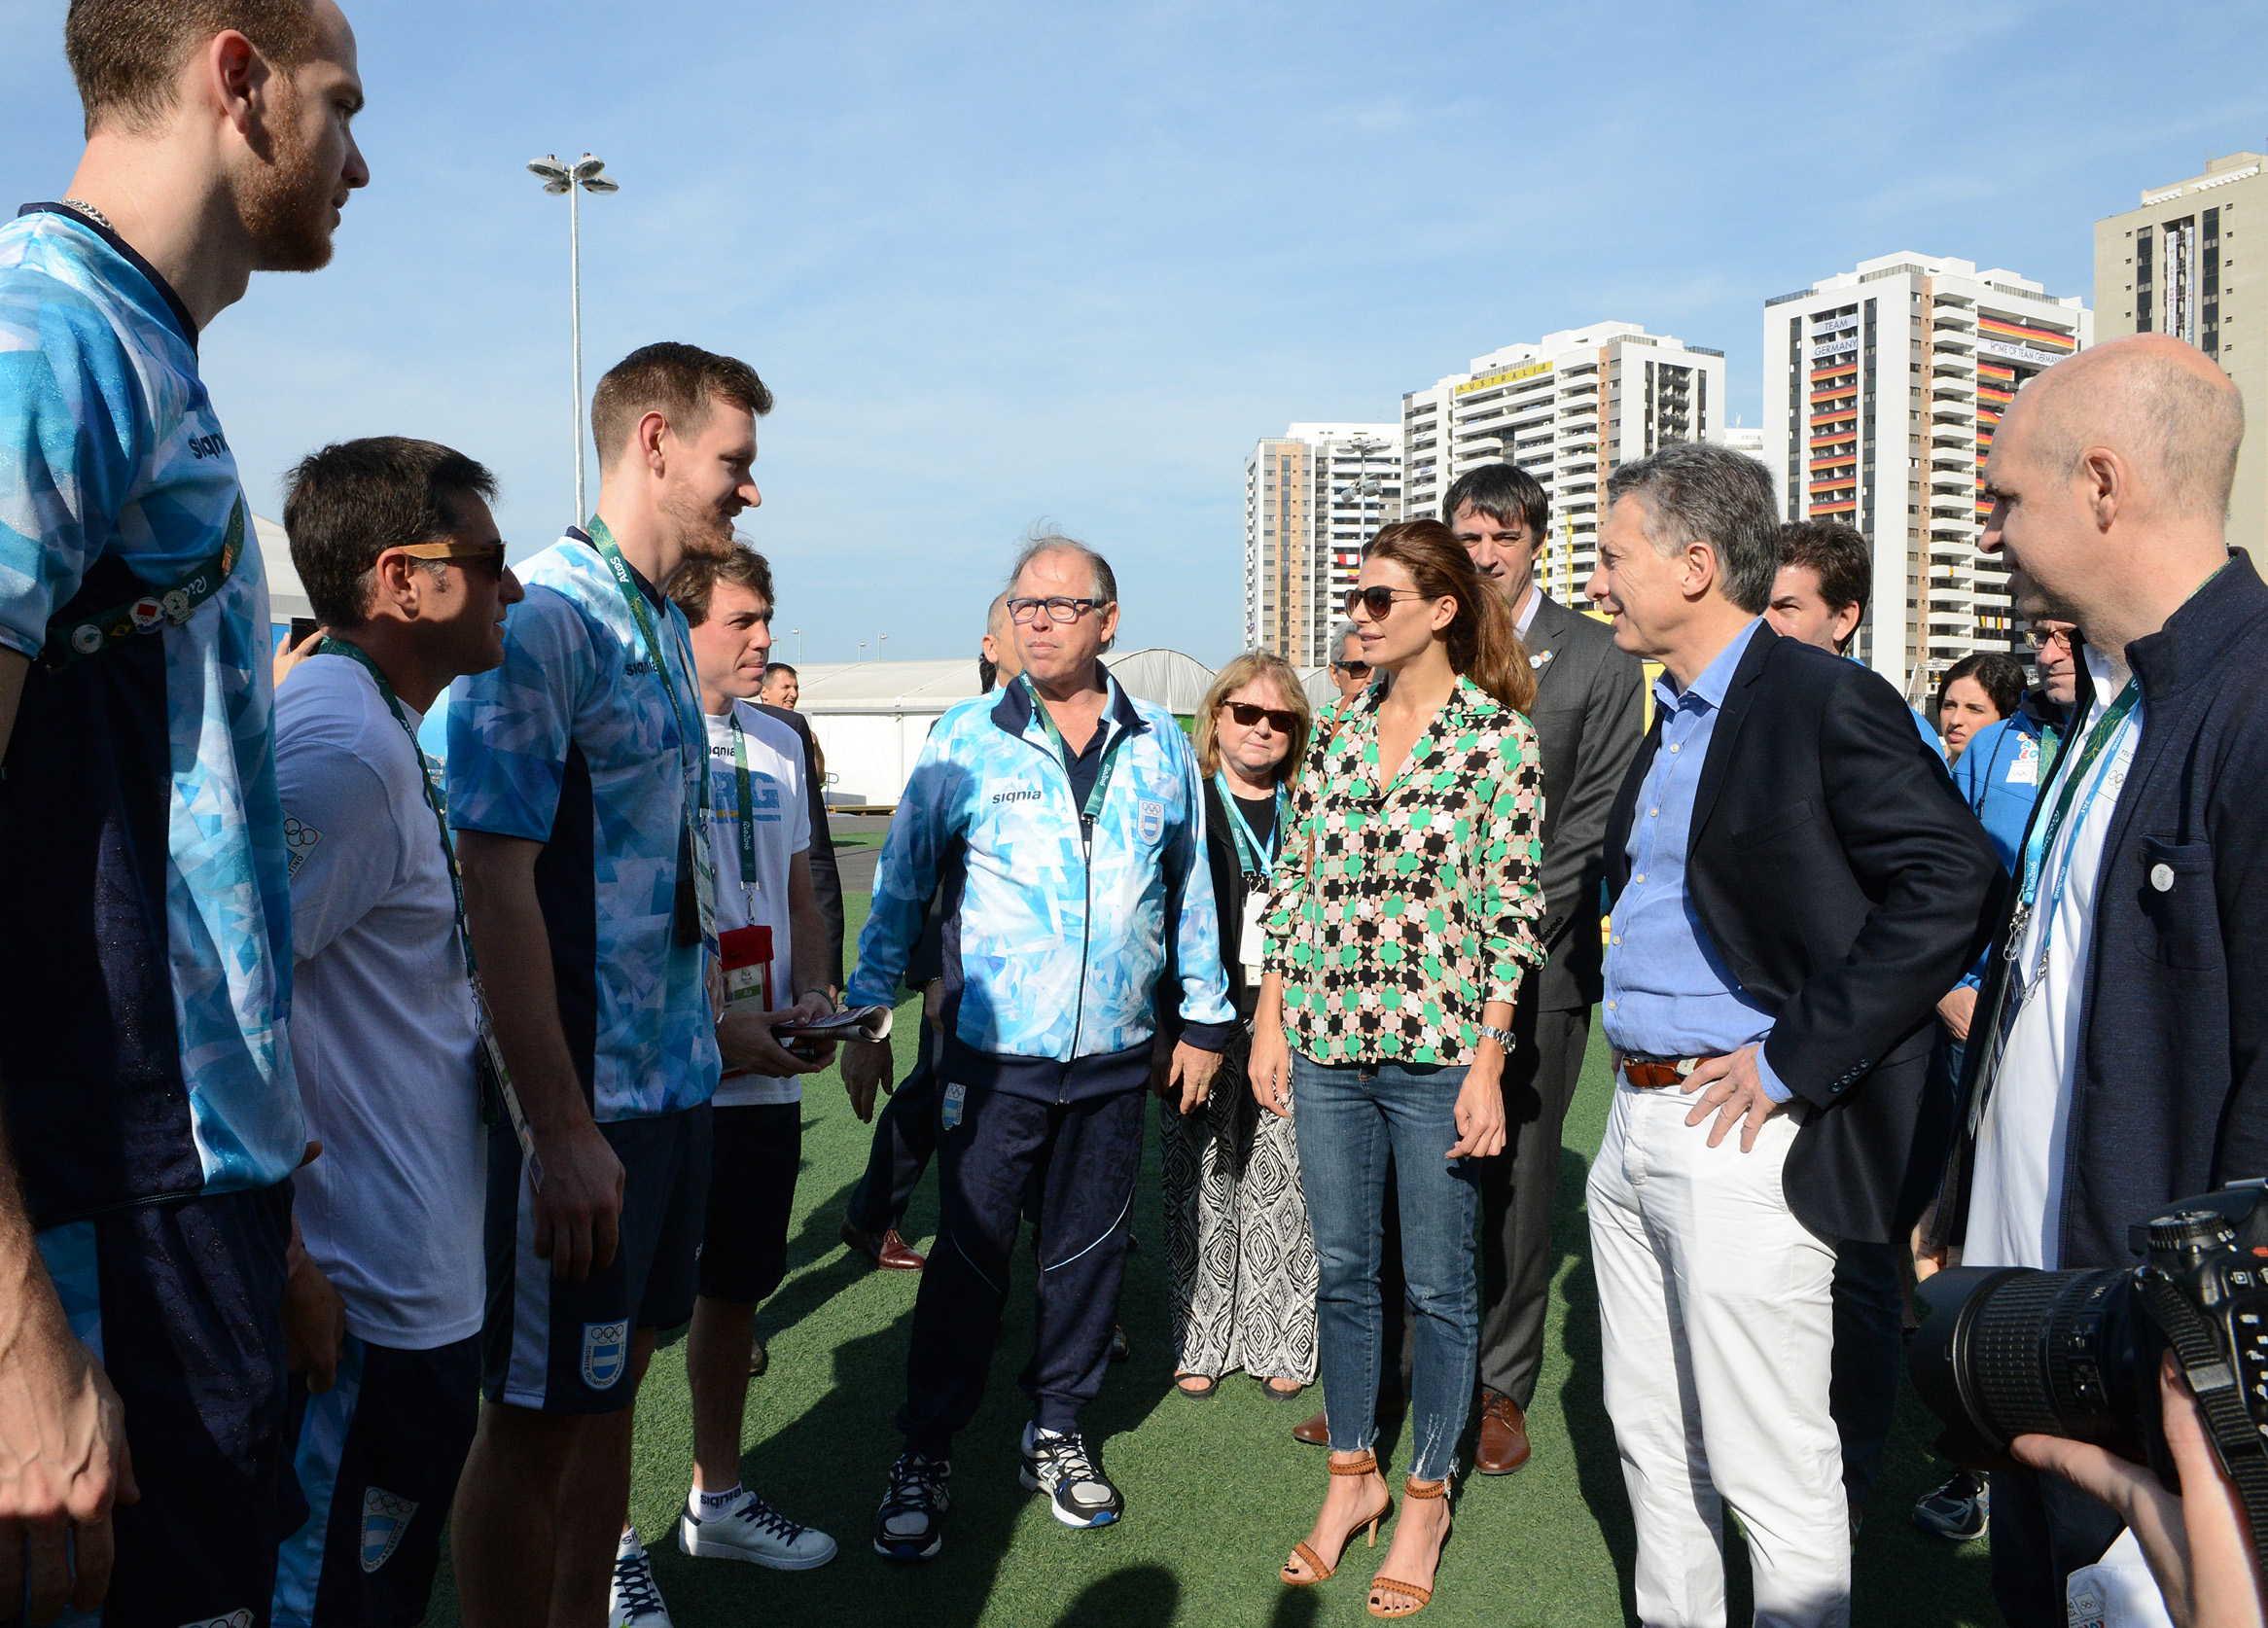 El Presidente saludó a deportistas argentinos en la Villa Olímpica